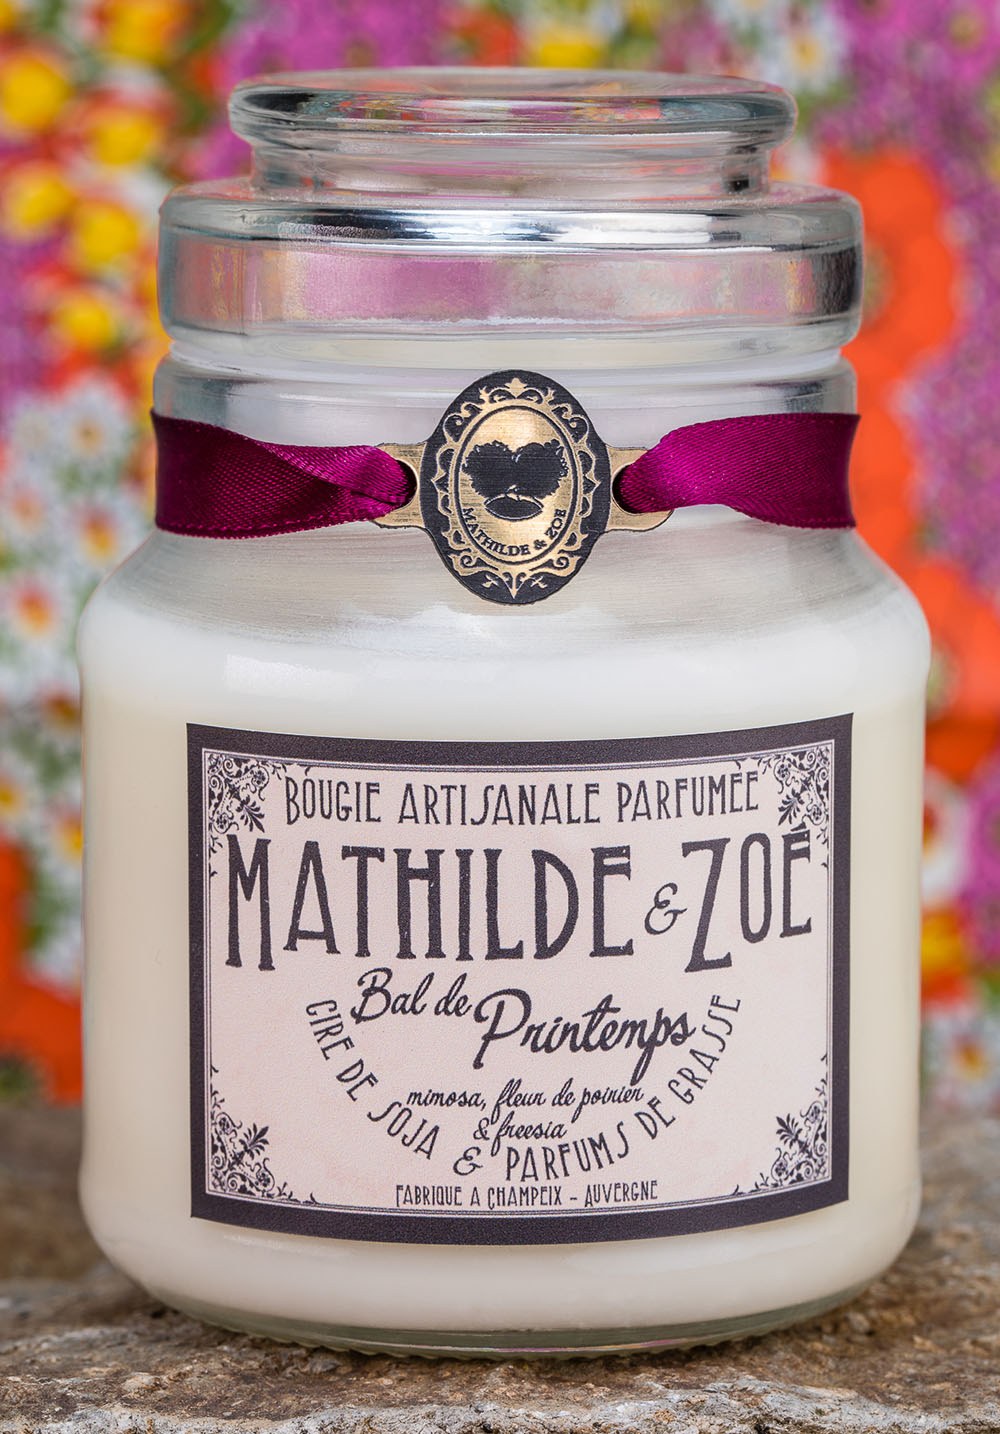 Bougie artisanale parfumée Mathilde et Zoé - Bal de Printemps